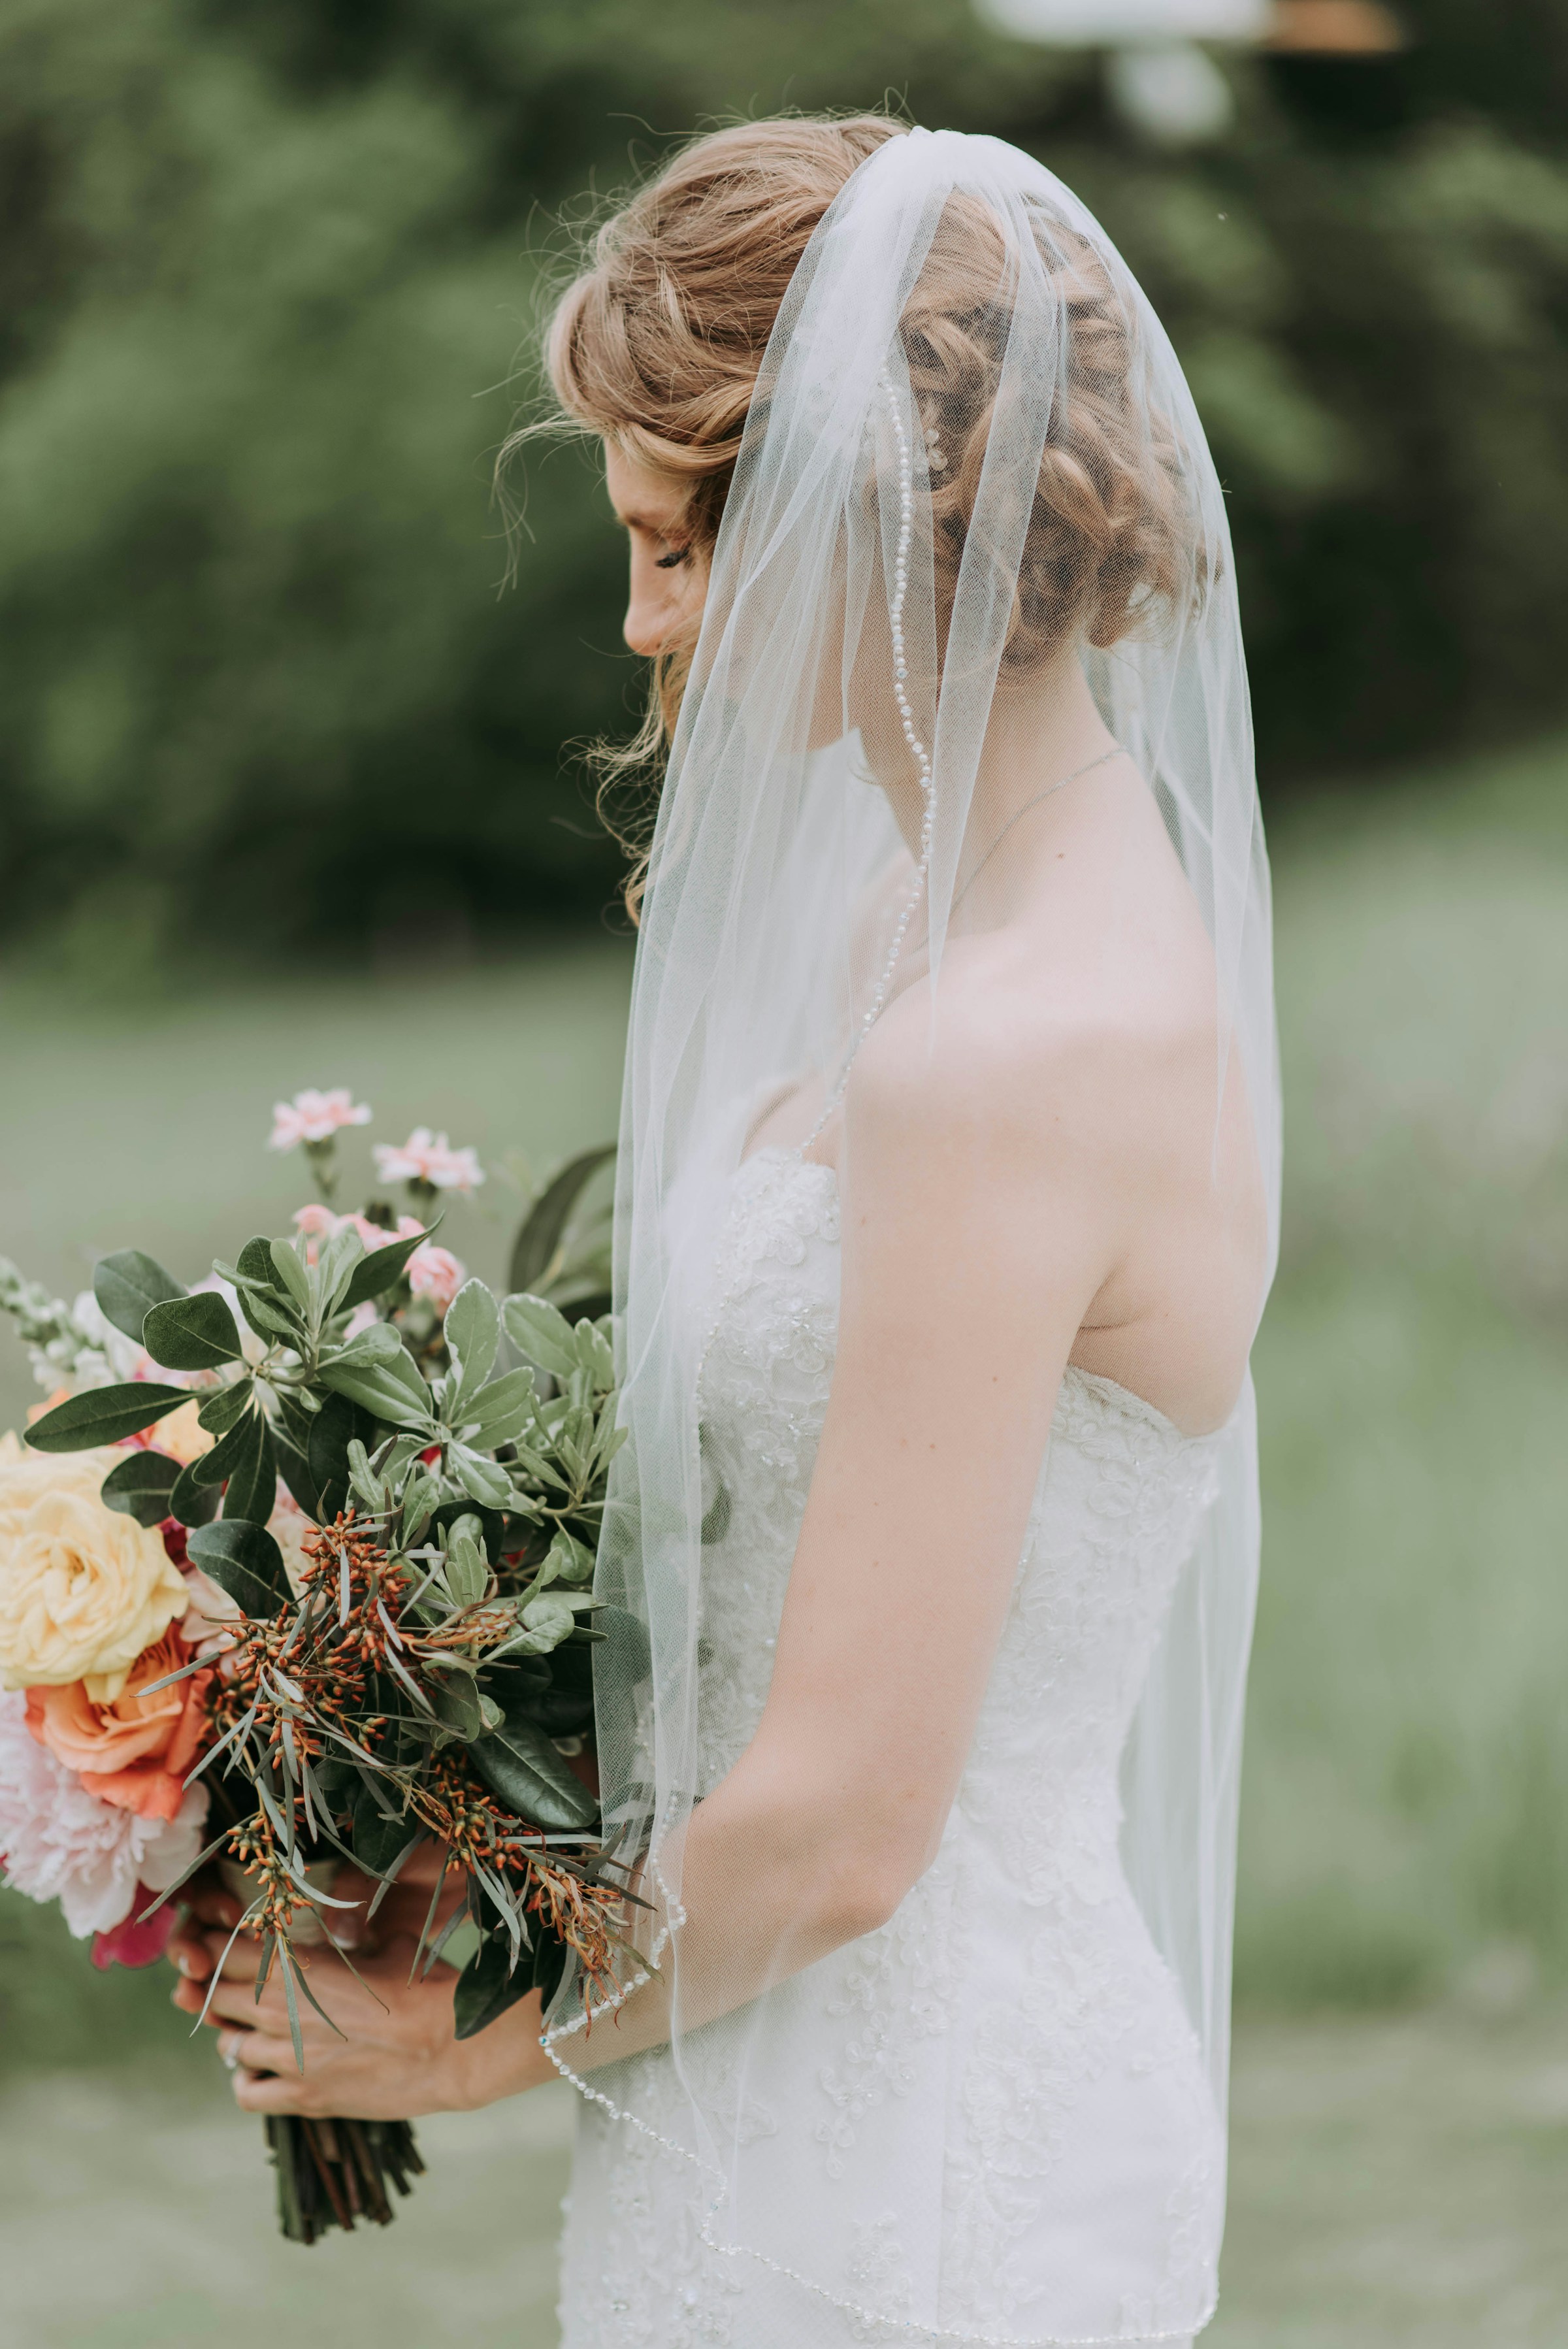 A bride holding a bouquet | Source: Unsplash